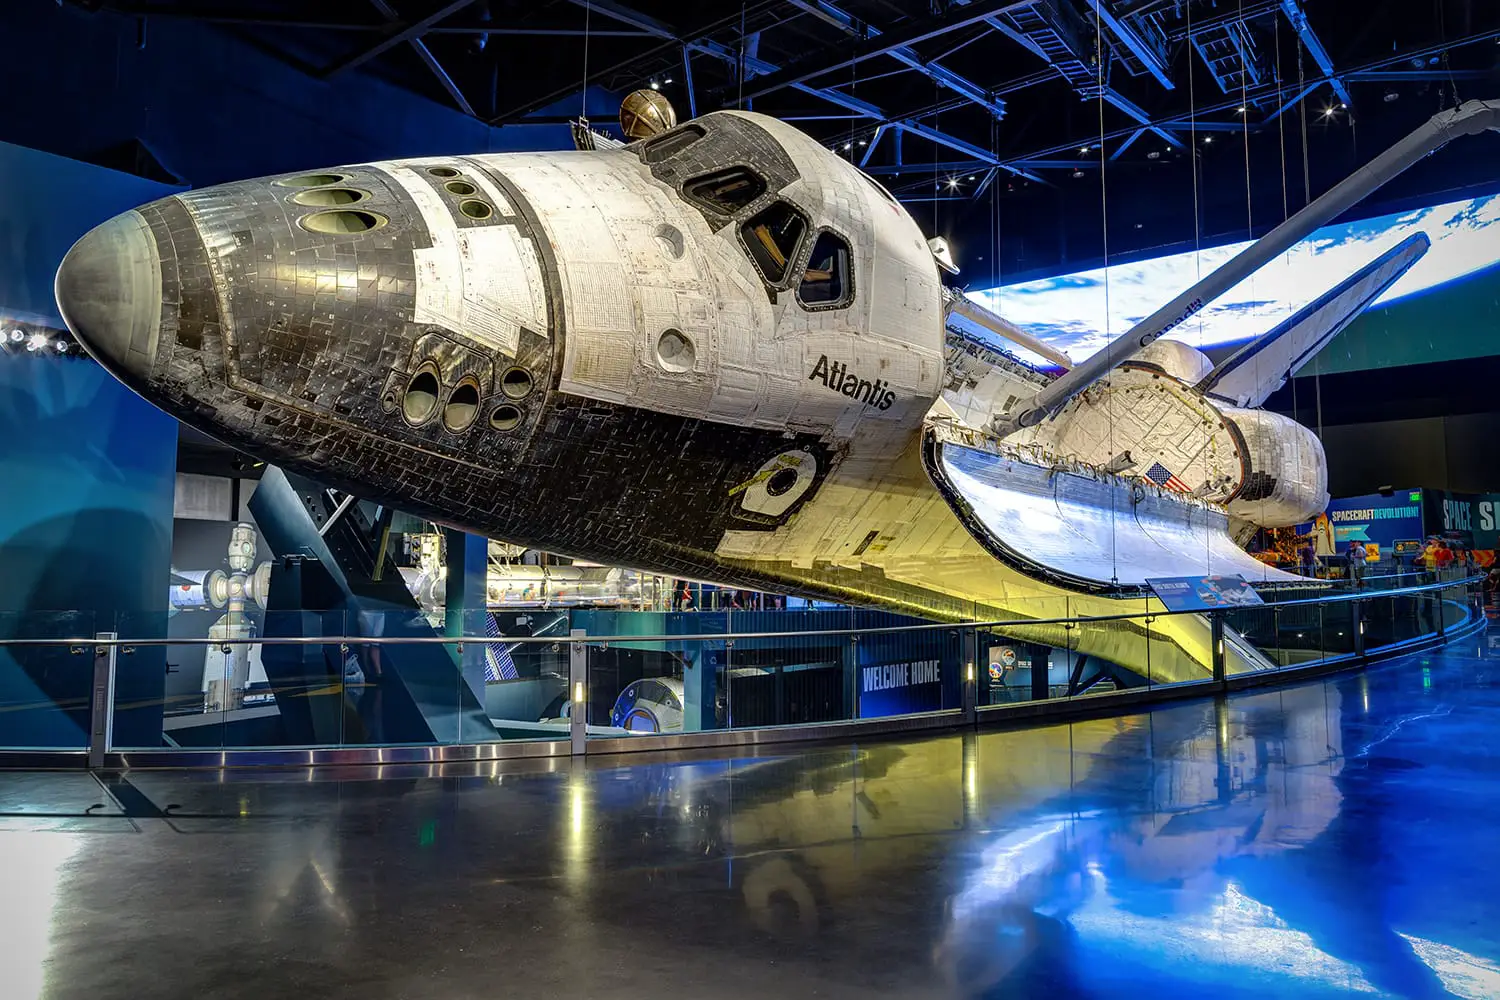 Διαστημικό λεωφορείο Atlantis που εκτίθεται στο συγκρότημα επισκεπτών του Διαστημικού Κέντρου Κένεντι, Φλόριντα, Ηνωμένες Πολιτείες